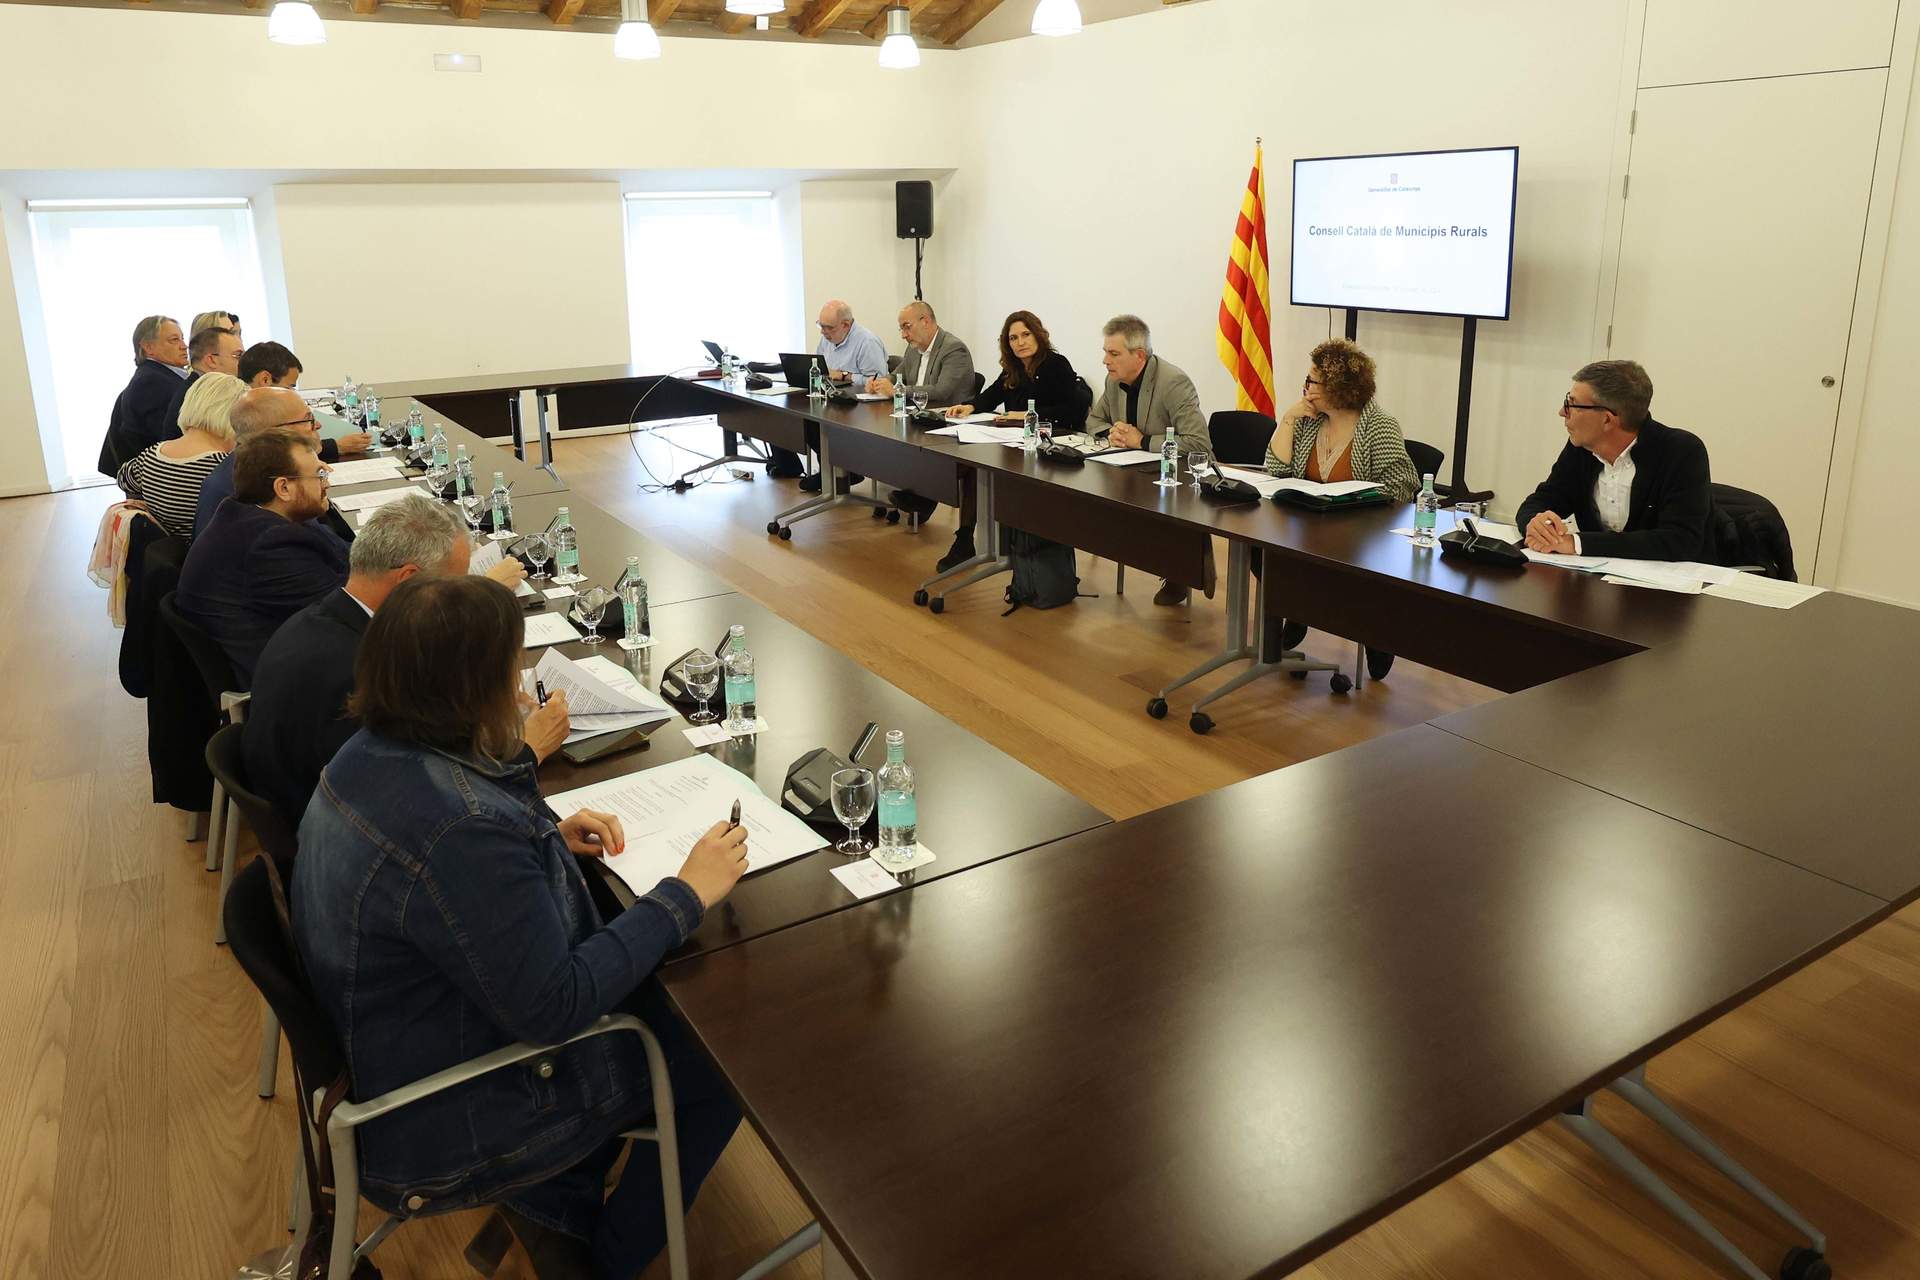 La Generalitat constituye el nuevo Consell Català de Municipis Rurals